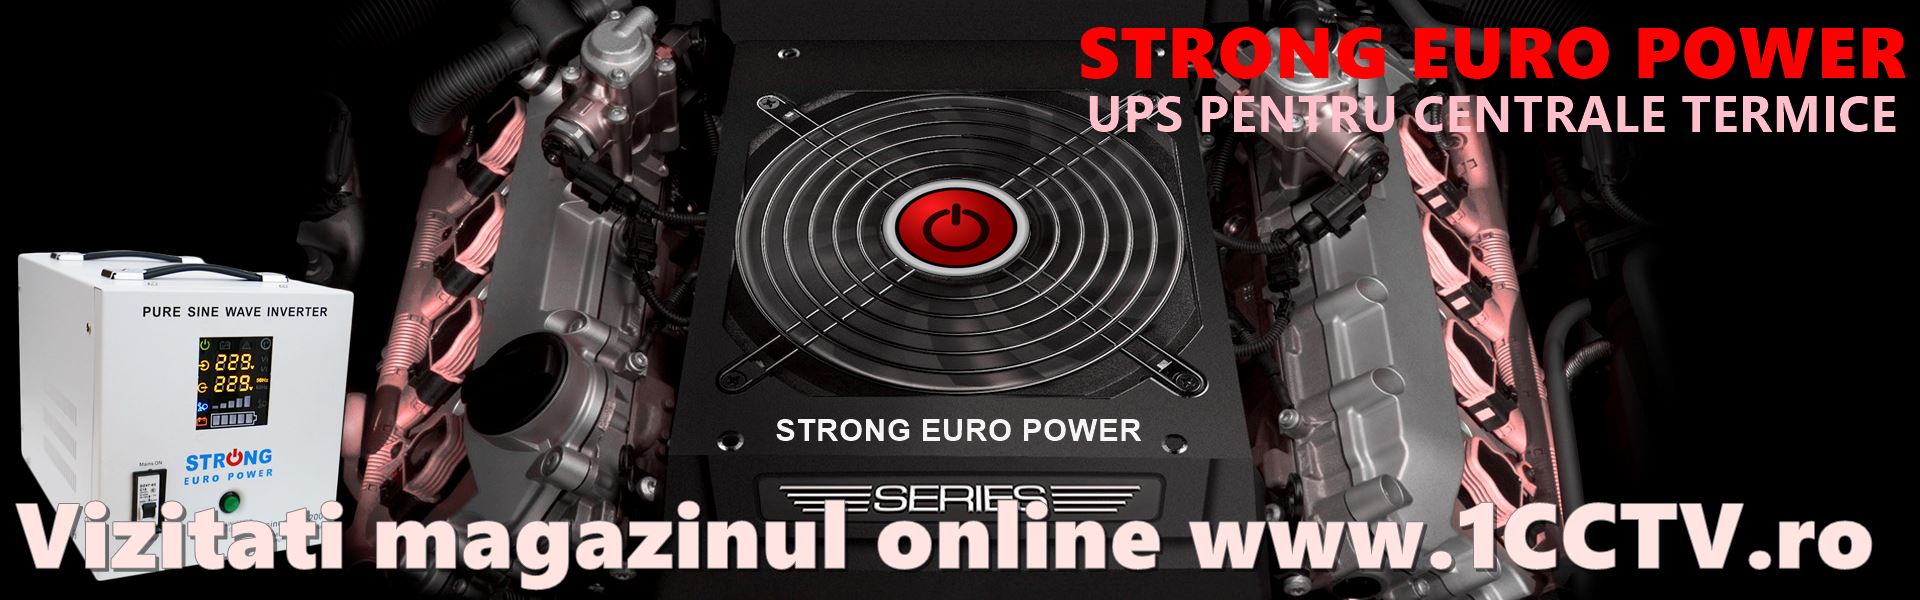 strong euro power